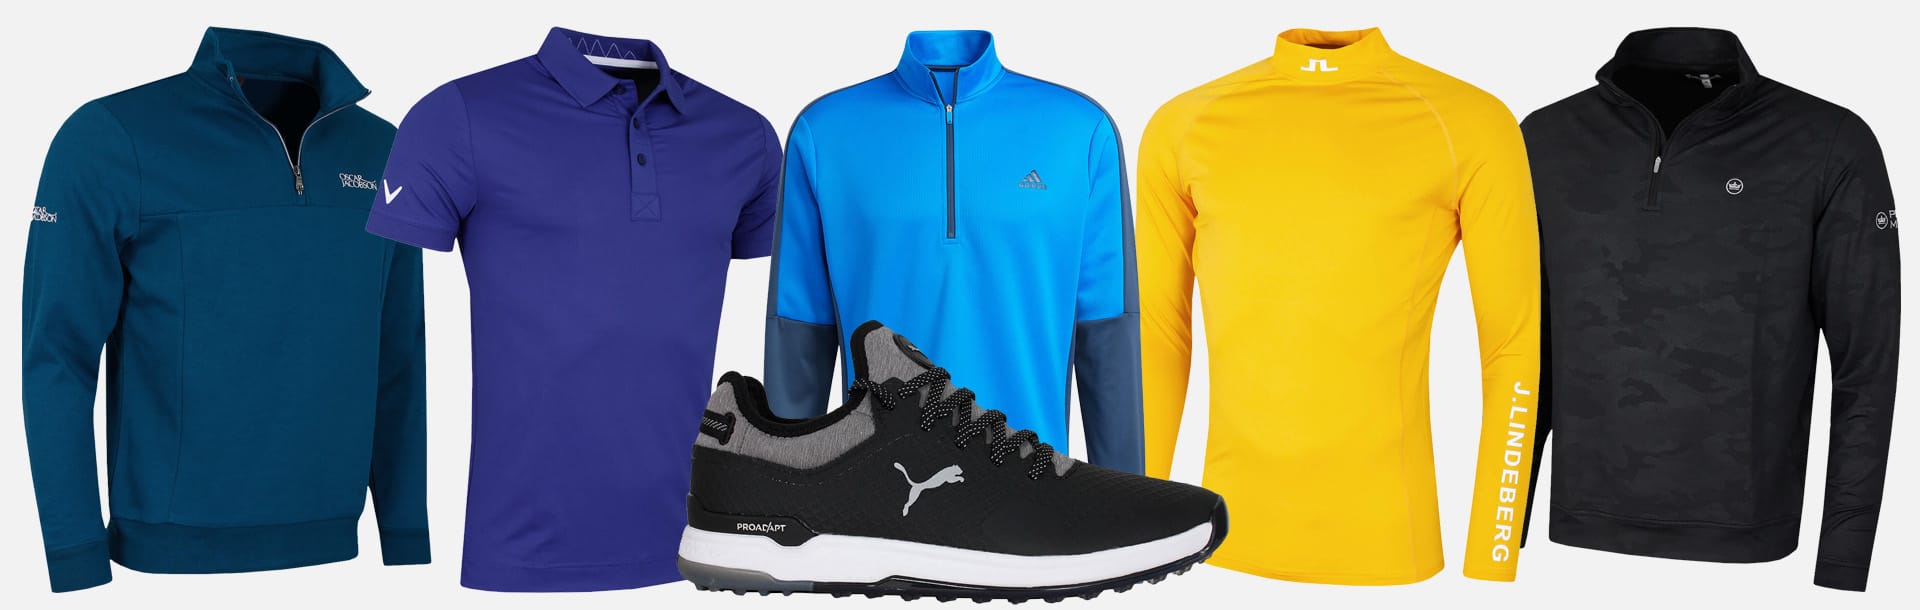 Golf apparel from Oscar Jacobson, Callaway, adidas, J.Lindeberg, Peter Millar and Puma